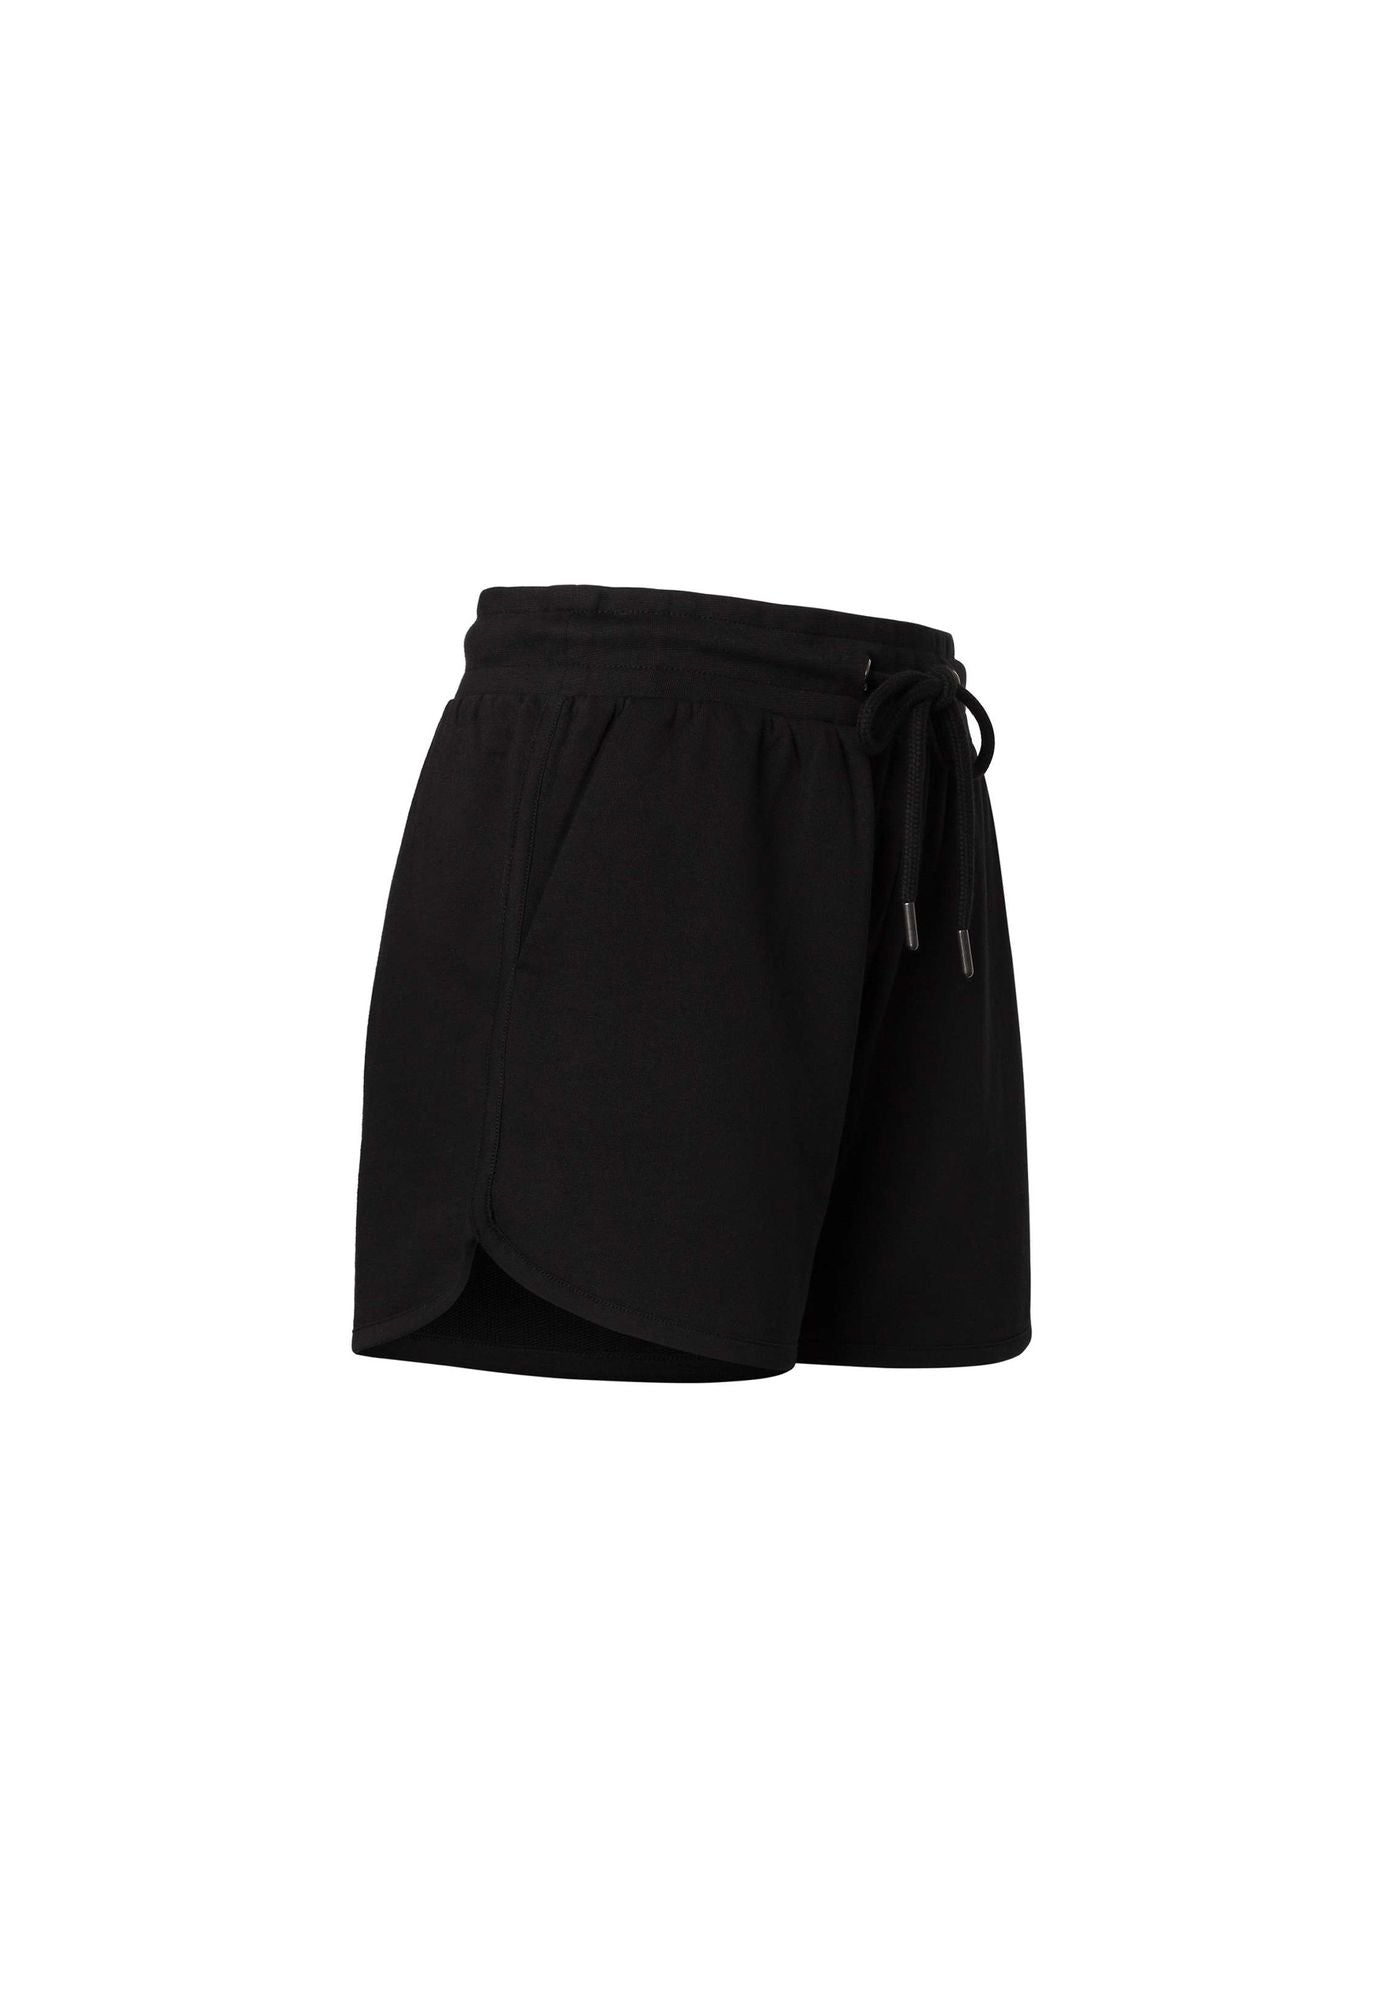 TT1023 Shorts (GOTS)